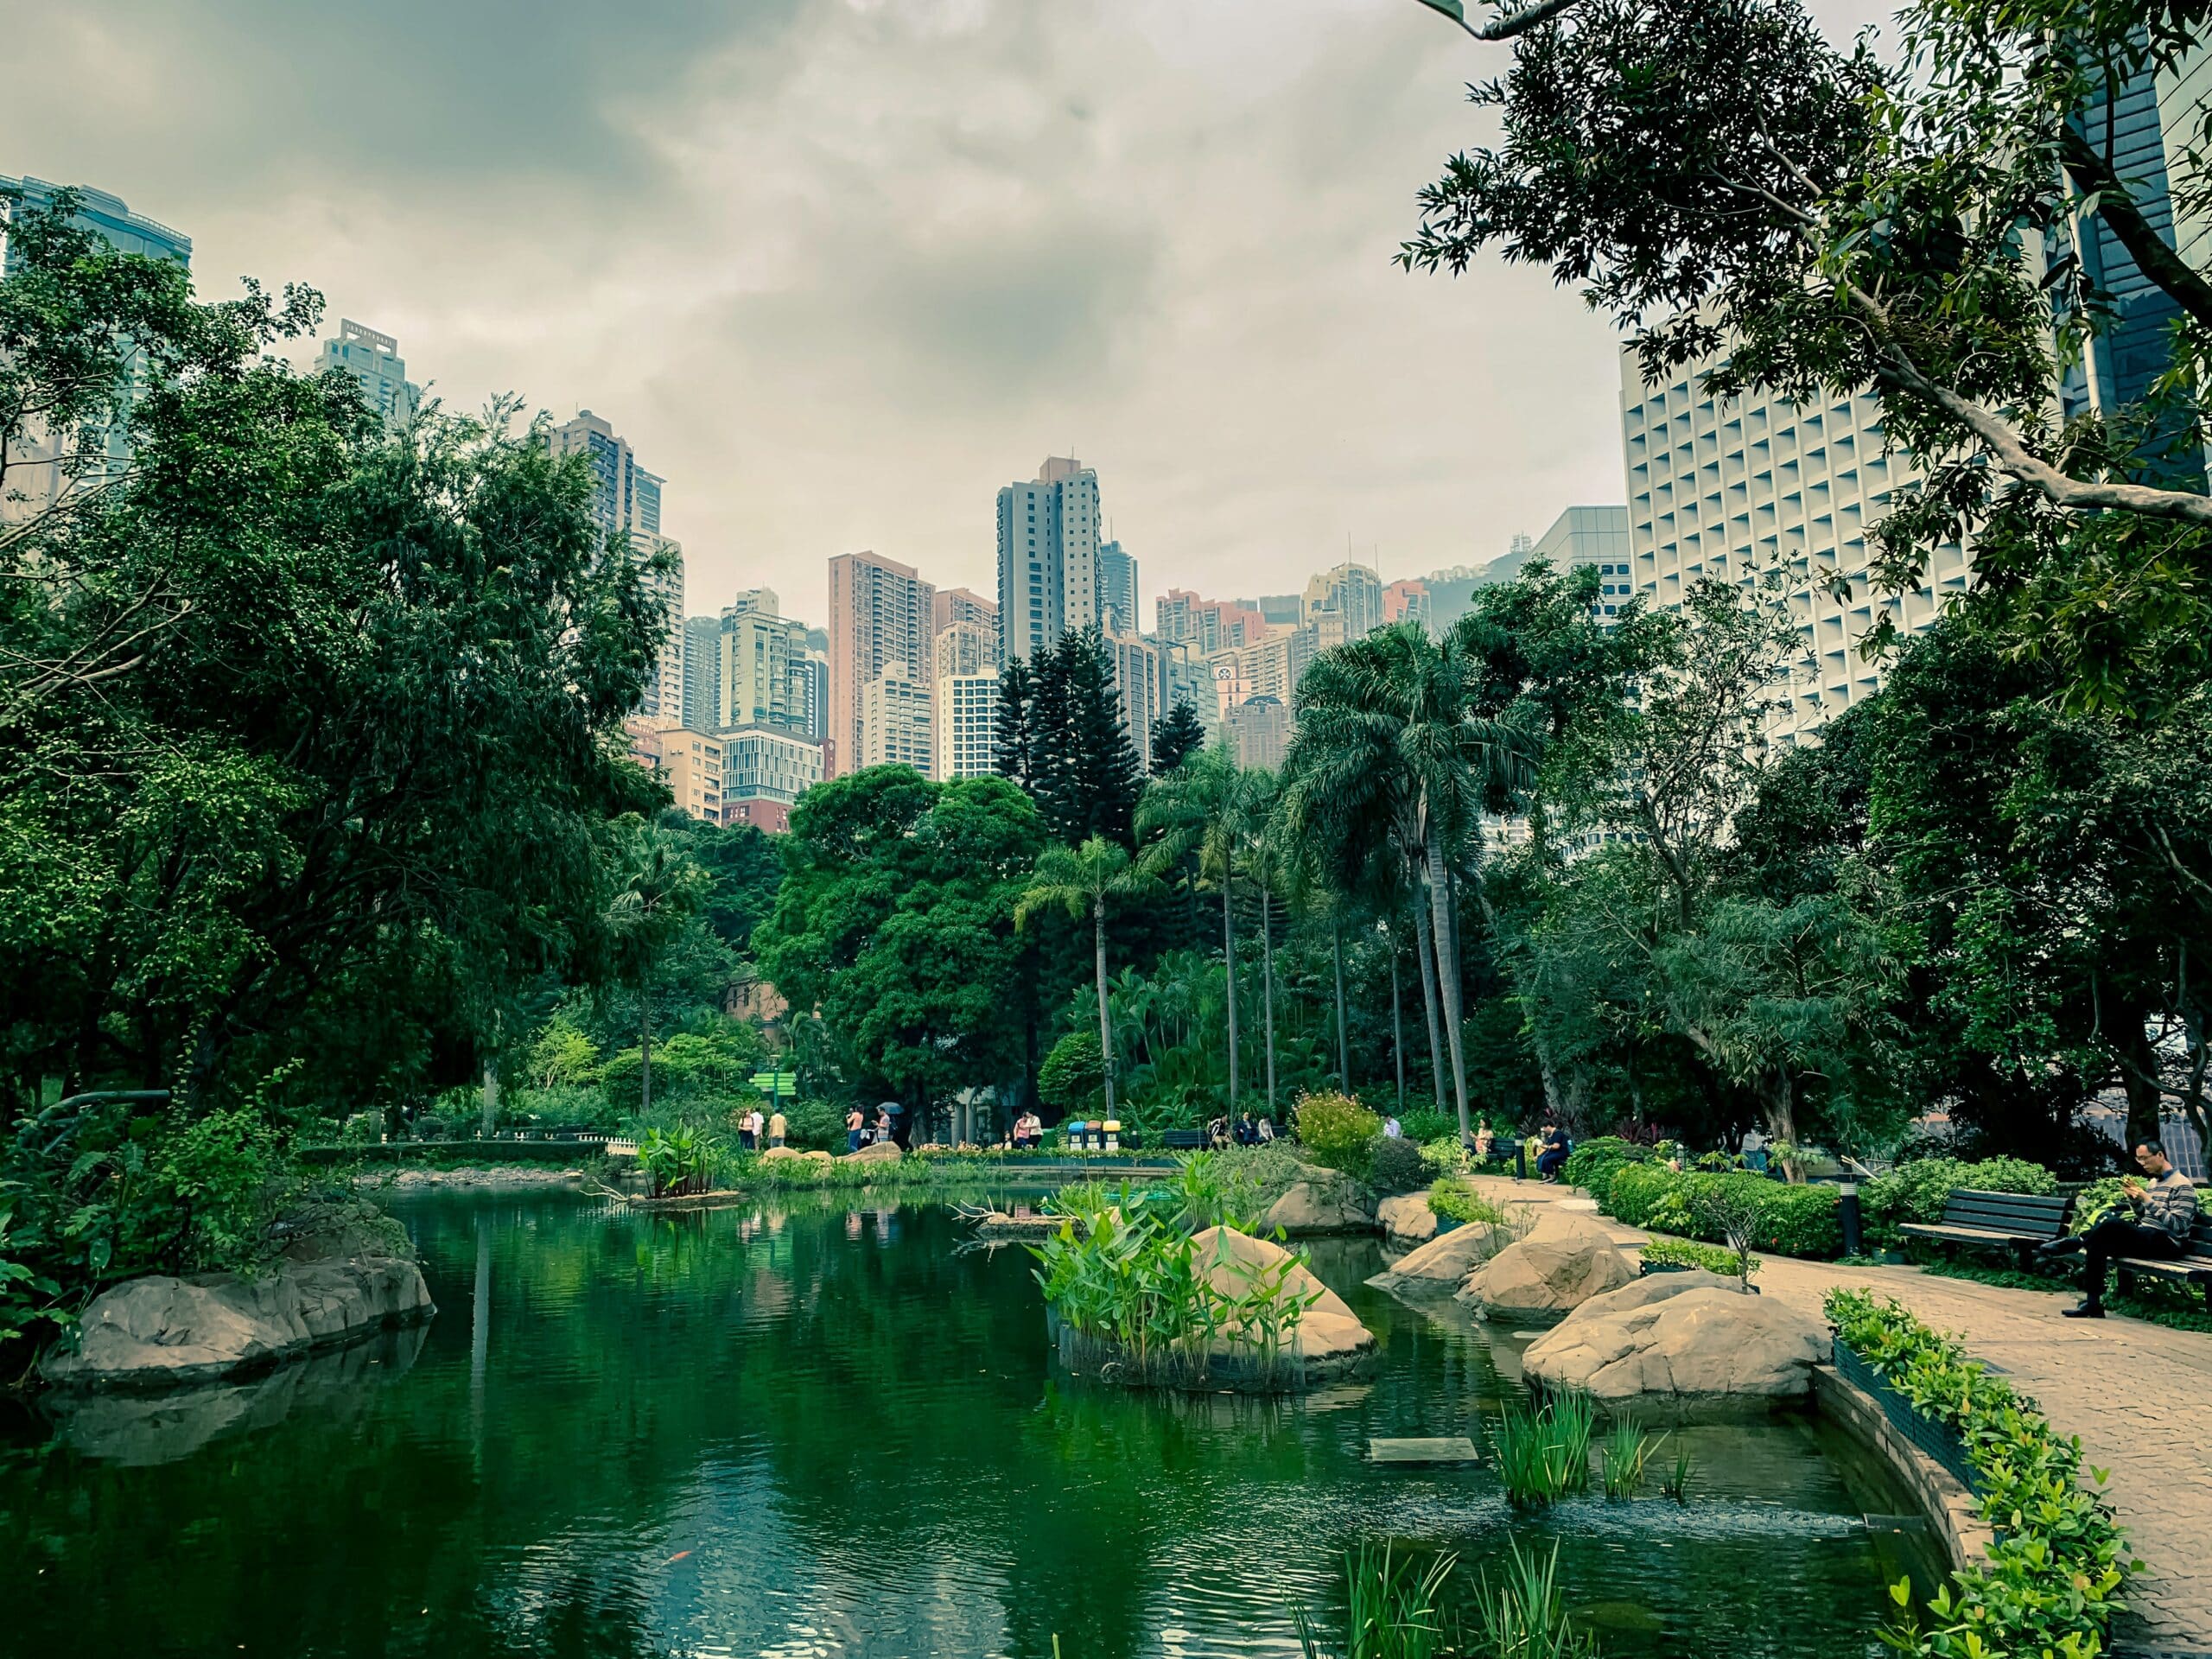 Vista do Parque de Hong Kong durante o dia com um lago a frente, pedras e vegetação em volta.